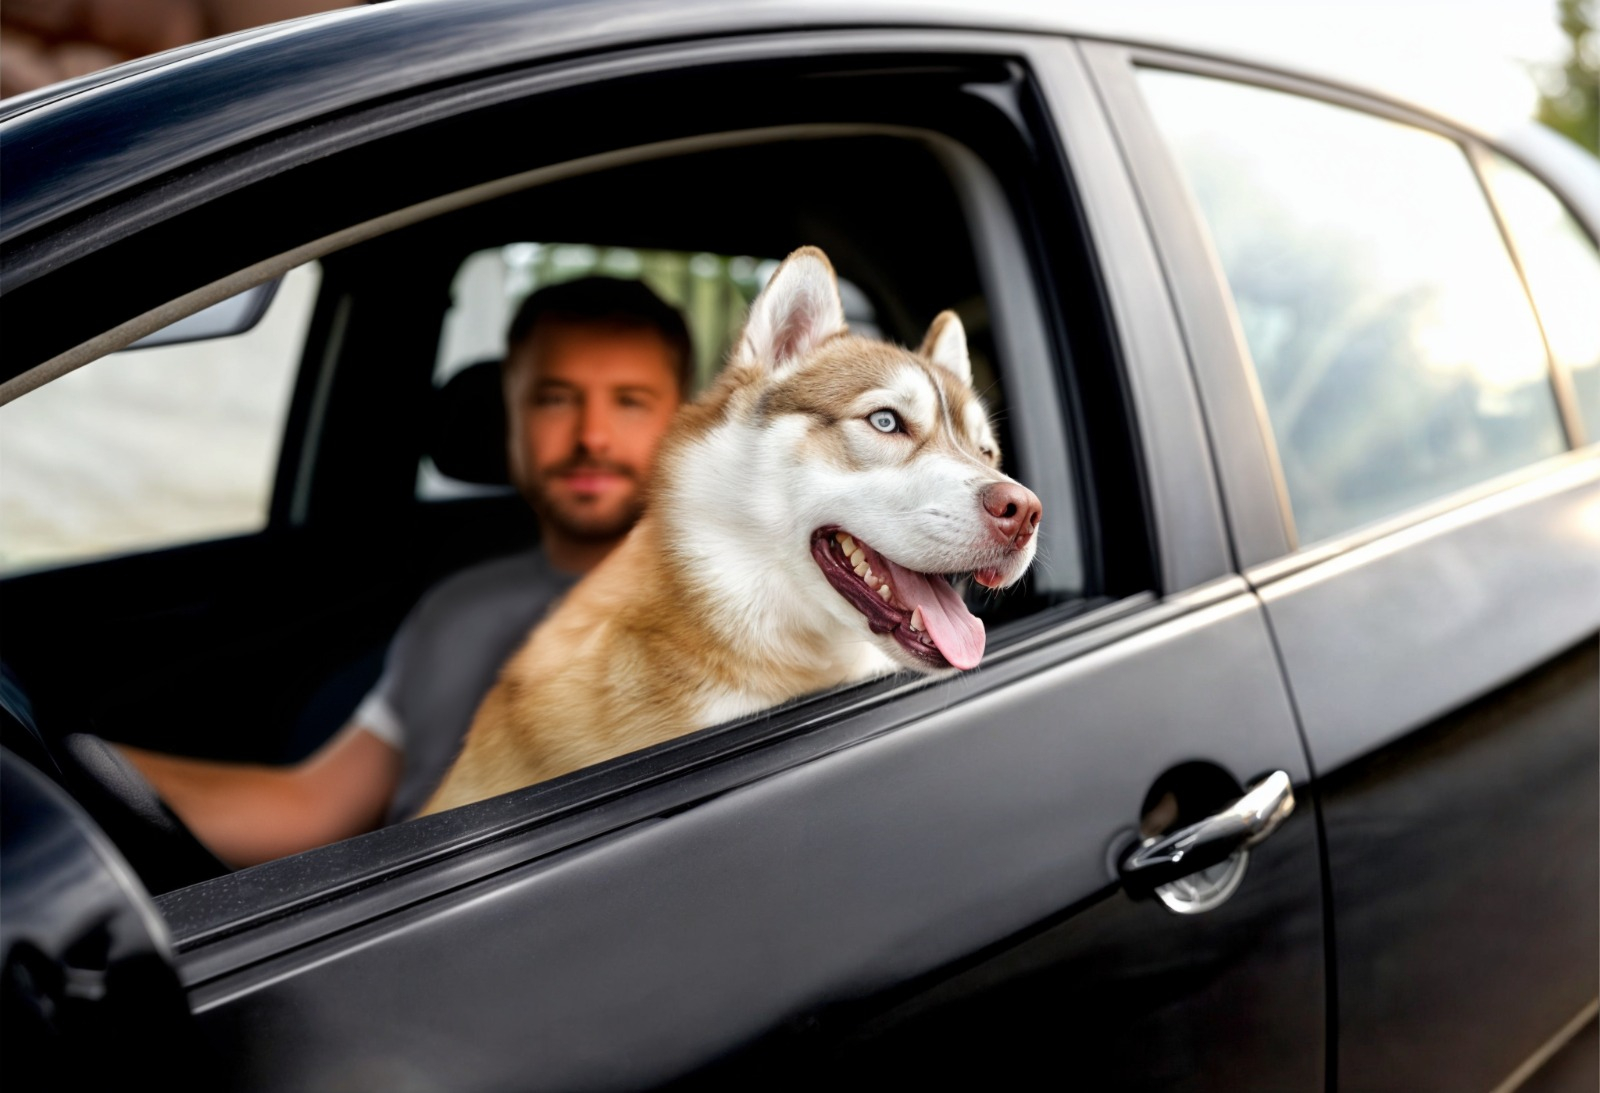 
                                 ¿Sabías que puedes recibir una papeleta por llevar mascotas de manera inadecuada en tu vehículo? 
                            